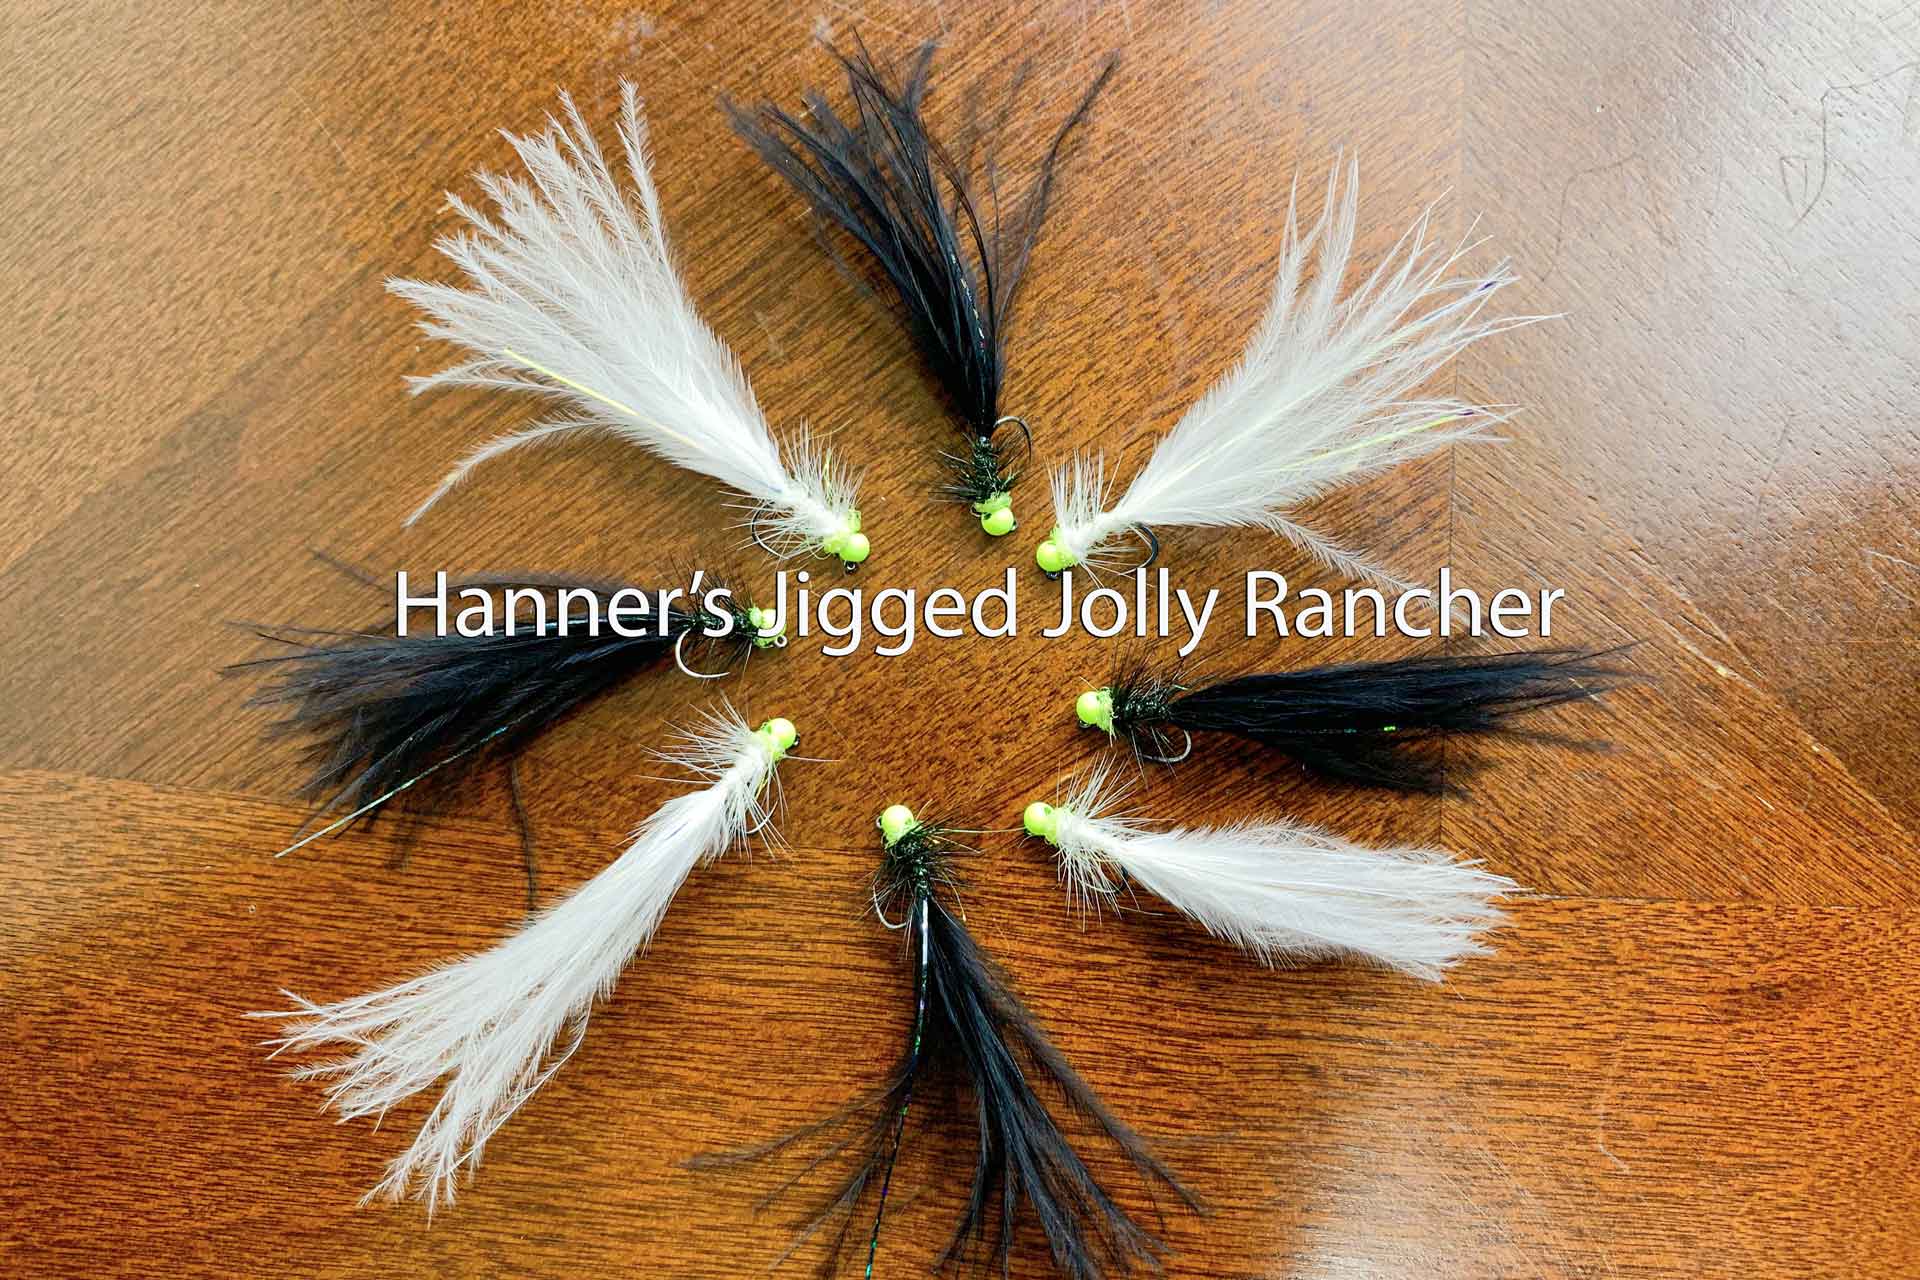 Hanner’s Jigged Jolly Rancher